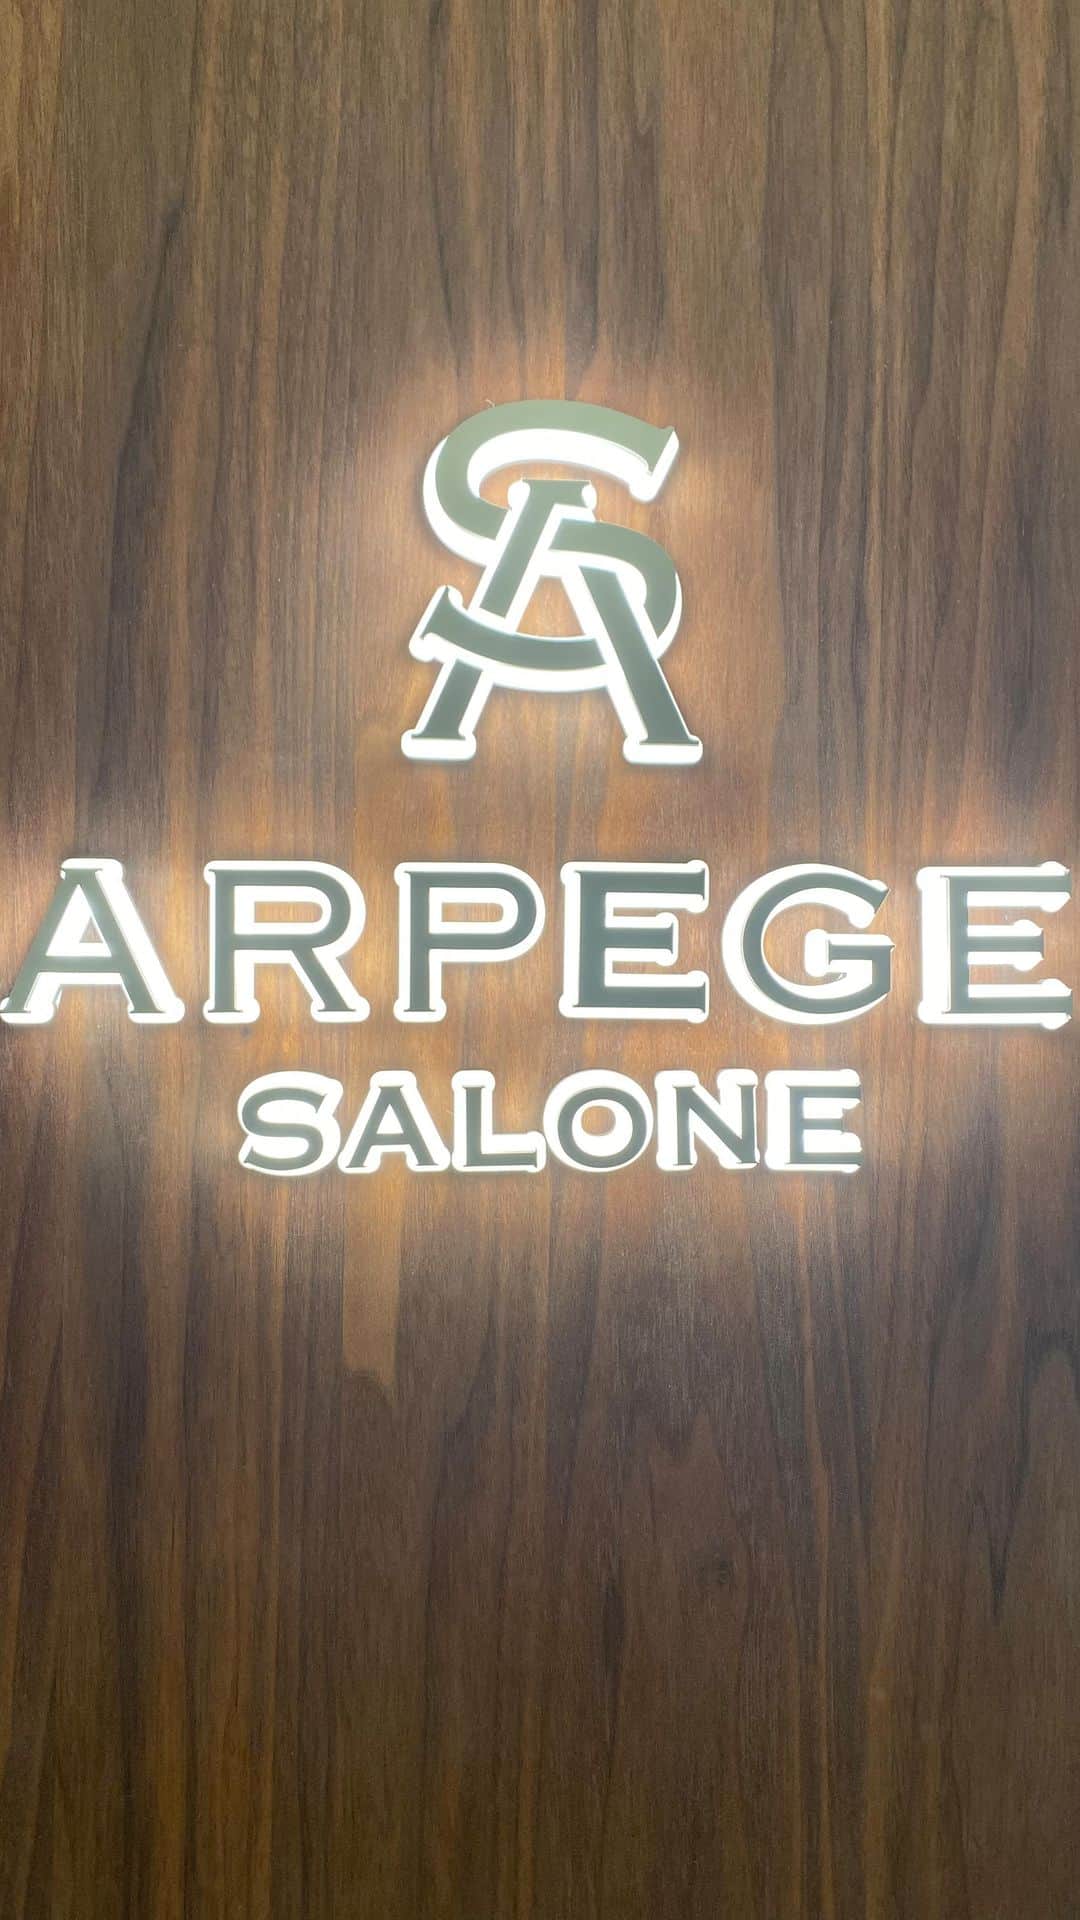 Arpege storyのインスタグラム：「ARPEGE SALONE新宿マルイ本館店では、  併設されたLIVEスタジオより  毎日 LIVE配信中✨  Apuweiser-riche JUSGLITTTY Rirandture Mystrada CADUNÉ Arpege story Original  全6ブランドを取り扱っております。  ※こちらのIGTVはフィード投稿から削除する場合がございます。   ARPEGE SALONE  insta live   staff:suzuna 149㎝/sawa 156㎝/kaori 157㎝  SALONE LINE:@137guyms LINE でのお問い合わせお待ちしております😊  -------------------------- SHOP NEWS  ☑︎Arpege story会員様 10%OFF ＊11/23(木)〜11/27(月)  ☑︎EPOS CARD 10%OFF ＊11/18(土)〜11/27(月) ＊エポスカードのお支払いで10%offになります！  お取り置き依頼もお待ちしております✨  ARPEGE SALONE 新宿マルイ本館店  ☎︎03-3356-2315 LINE:@137guyms INSTA:@arpege_salone_official  -------------------------- #arpegestory  #apuweiserriche  #jusglitty #rirandture #mystrada #cadune #arpegestoryoriginal #instalive  #インスタライブ　 #新宿マルイ」